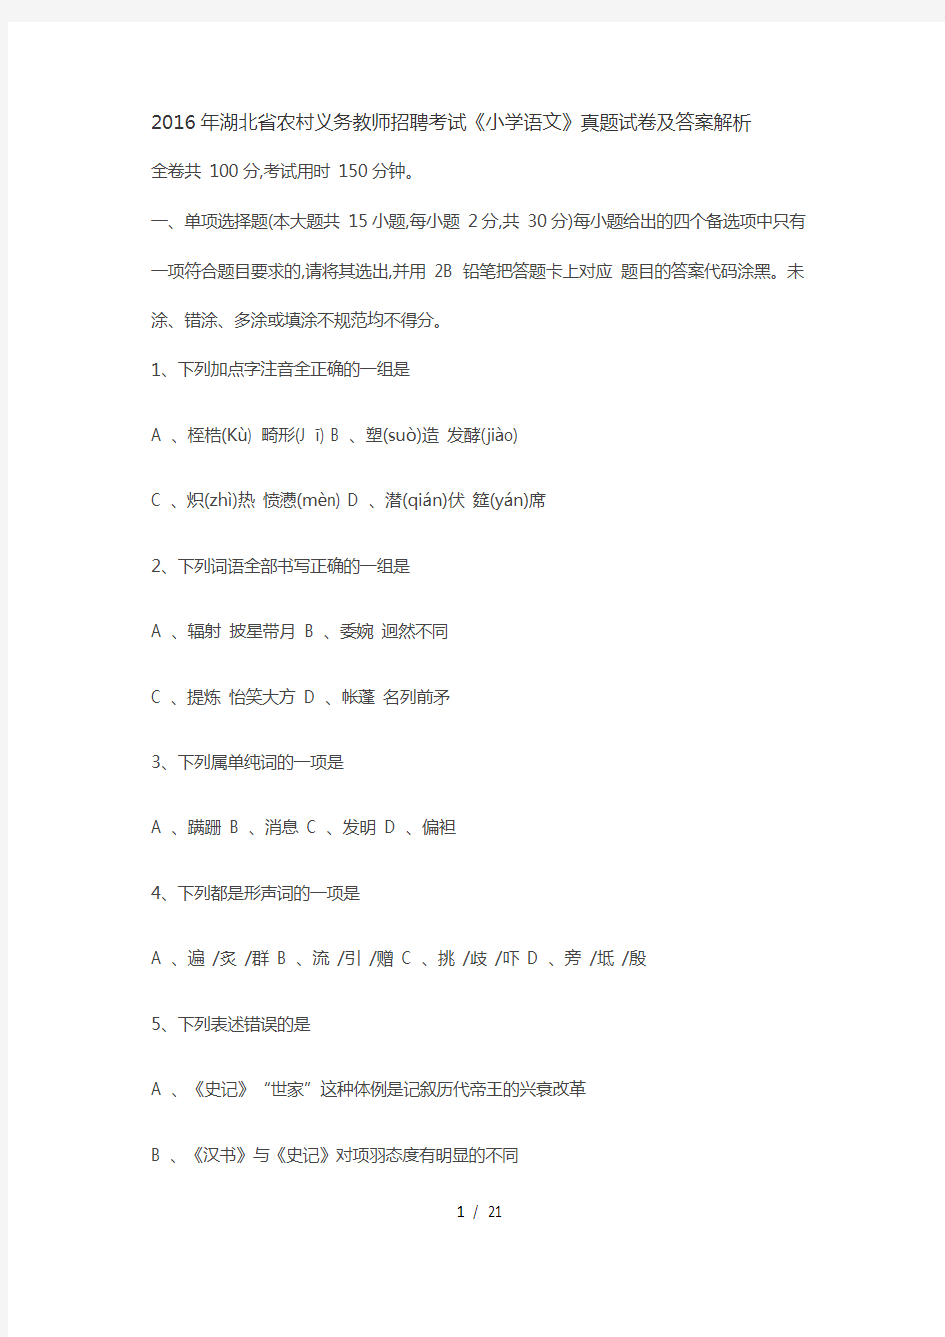 湖北省农村义务教师招聘考试小学语文真题试卷及答案解析